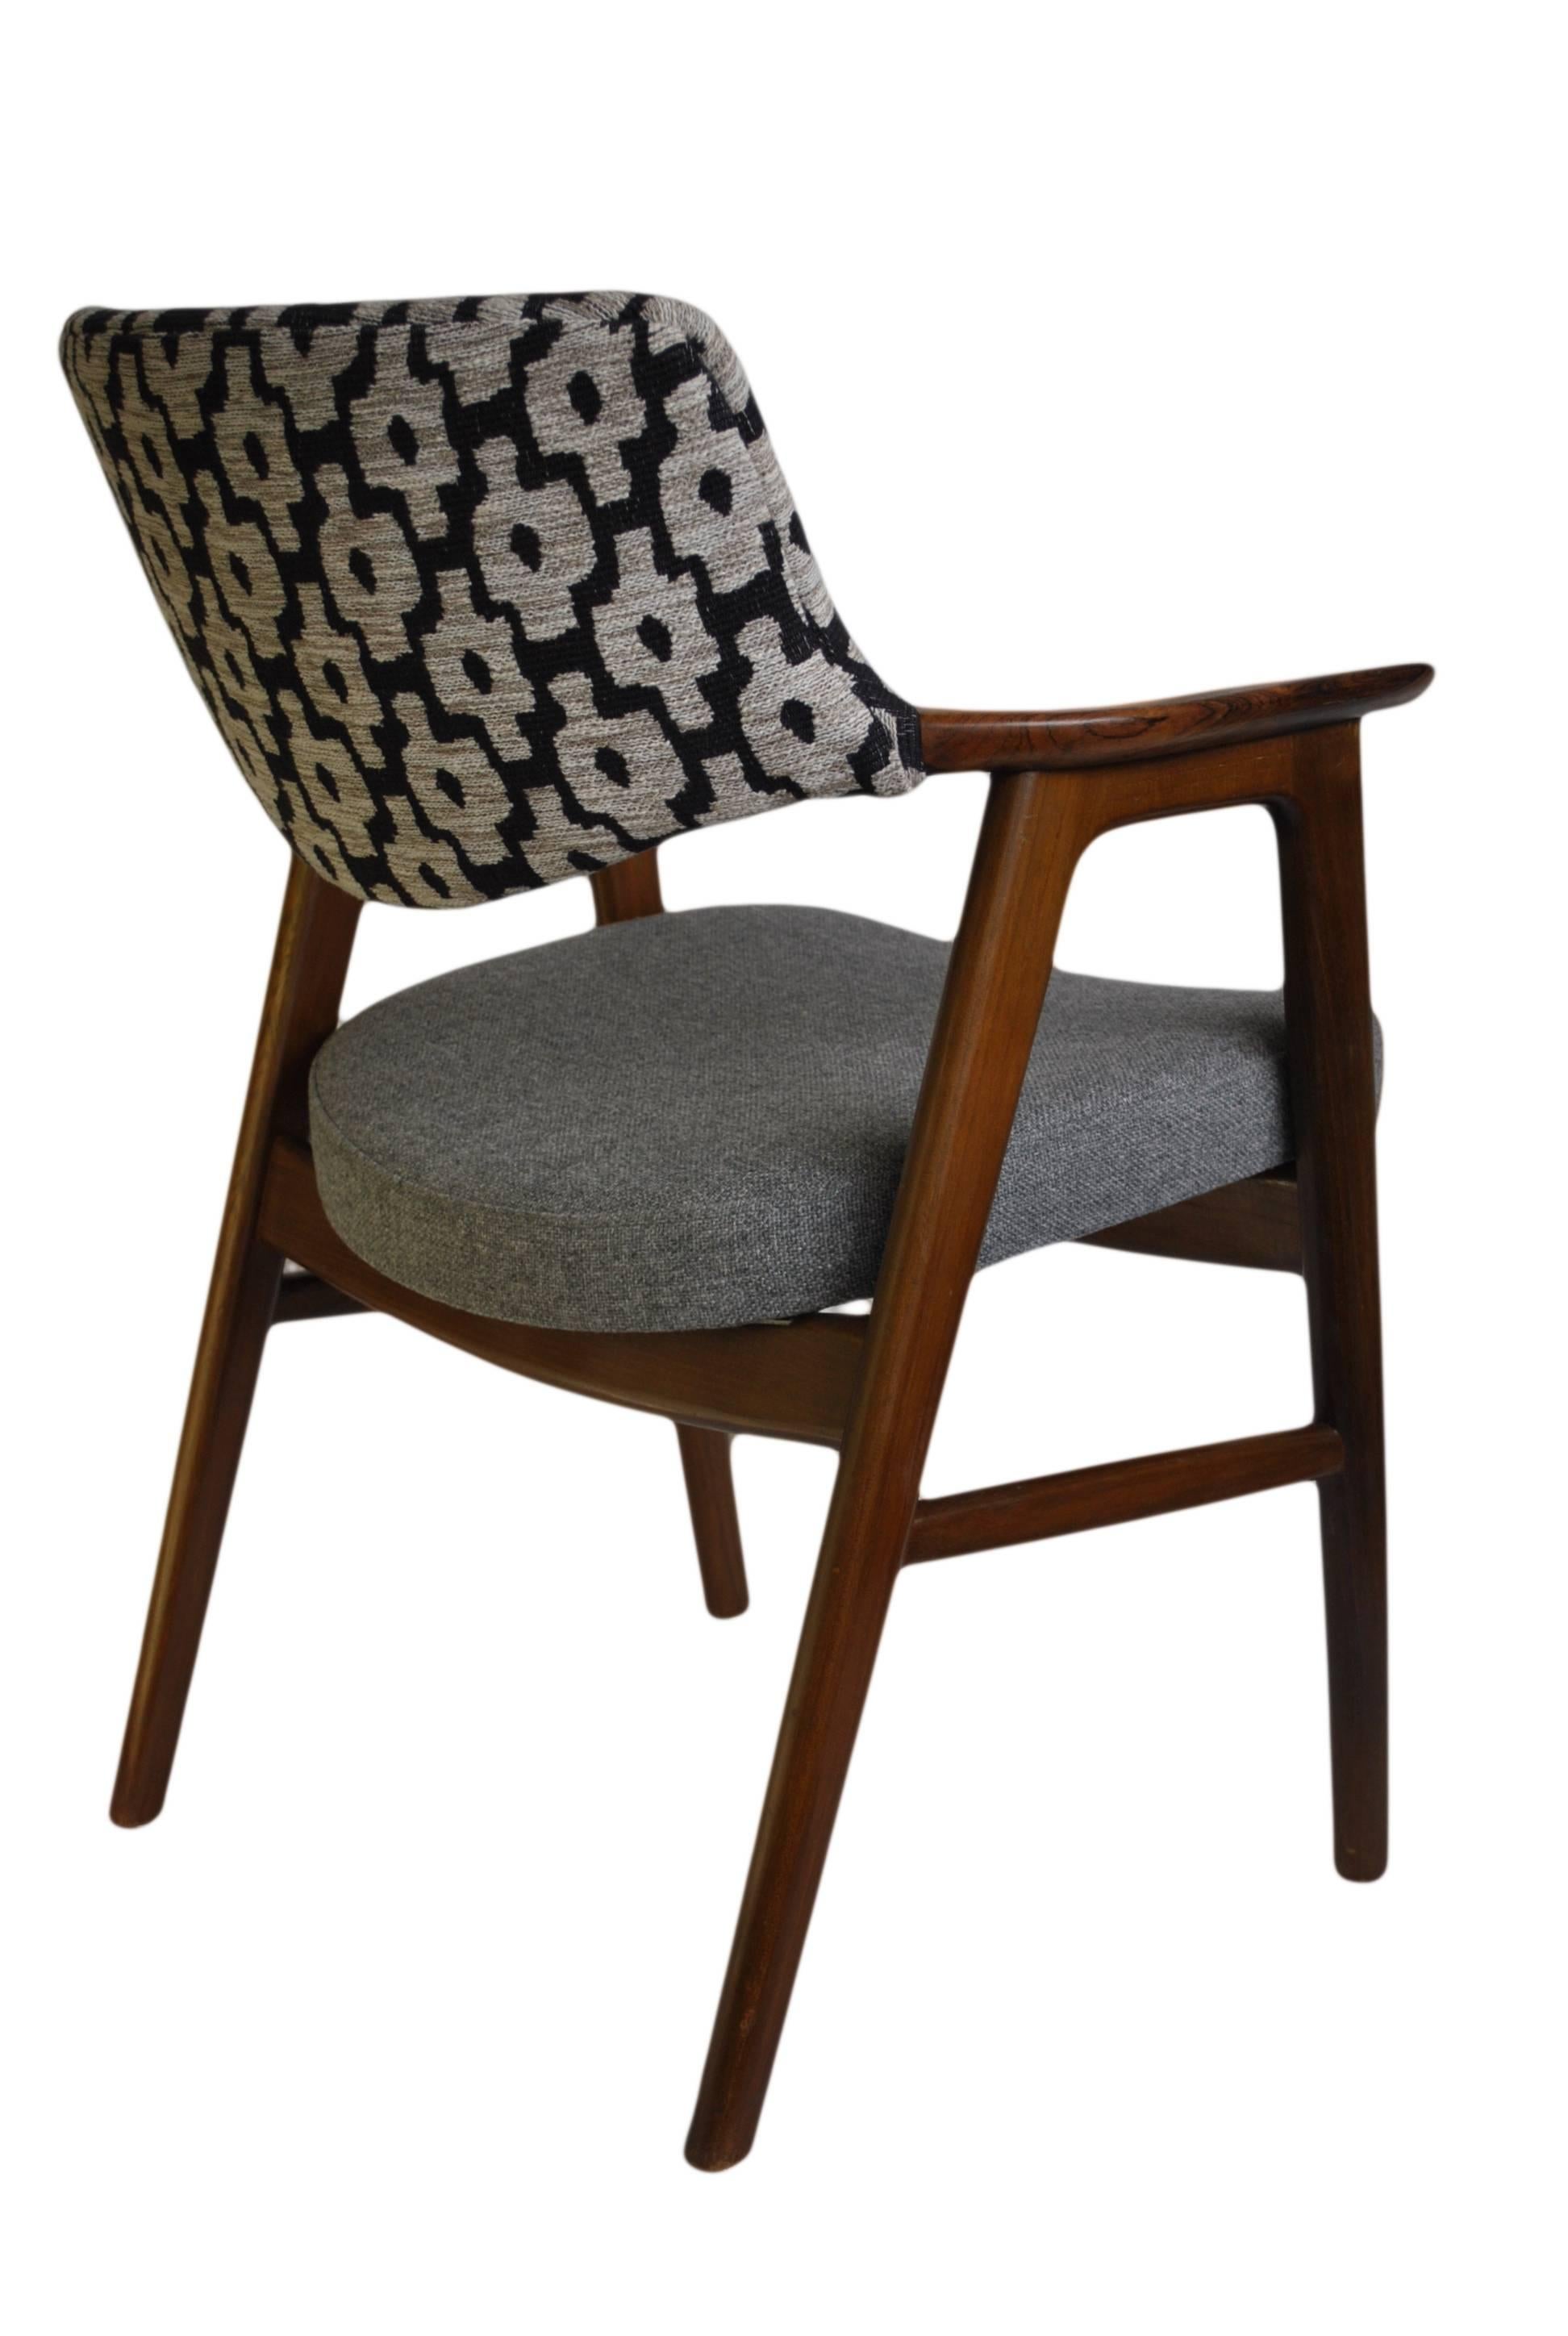 Erik Kirkegaard Chair, Refurbished and reupholstered. 1